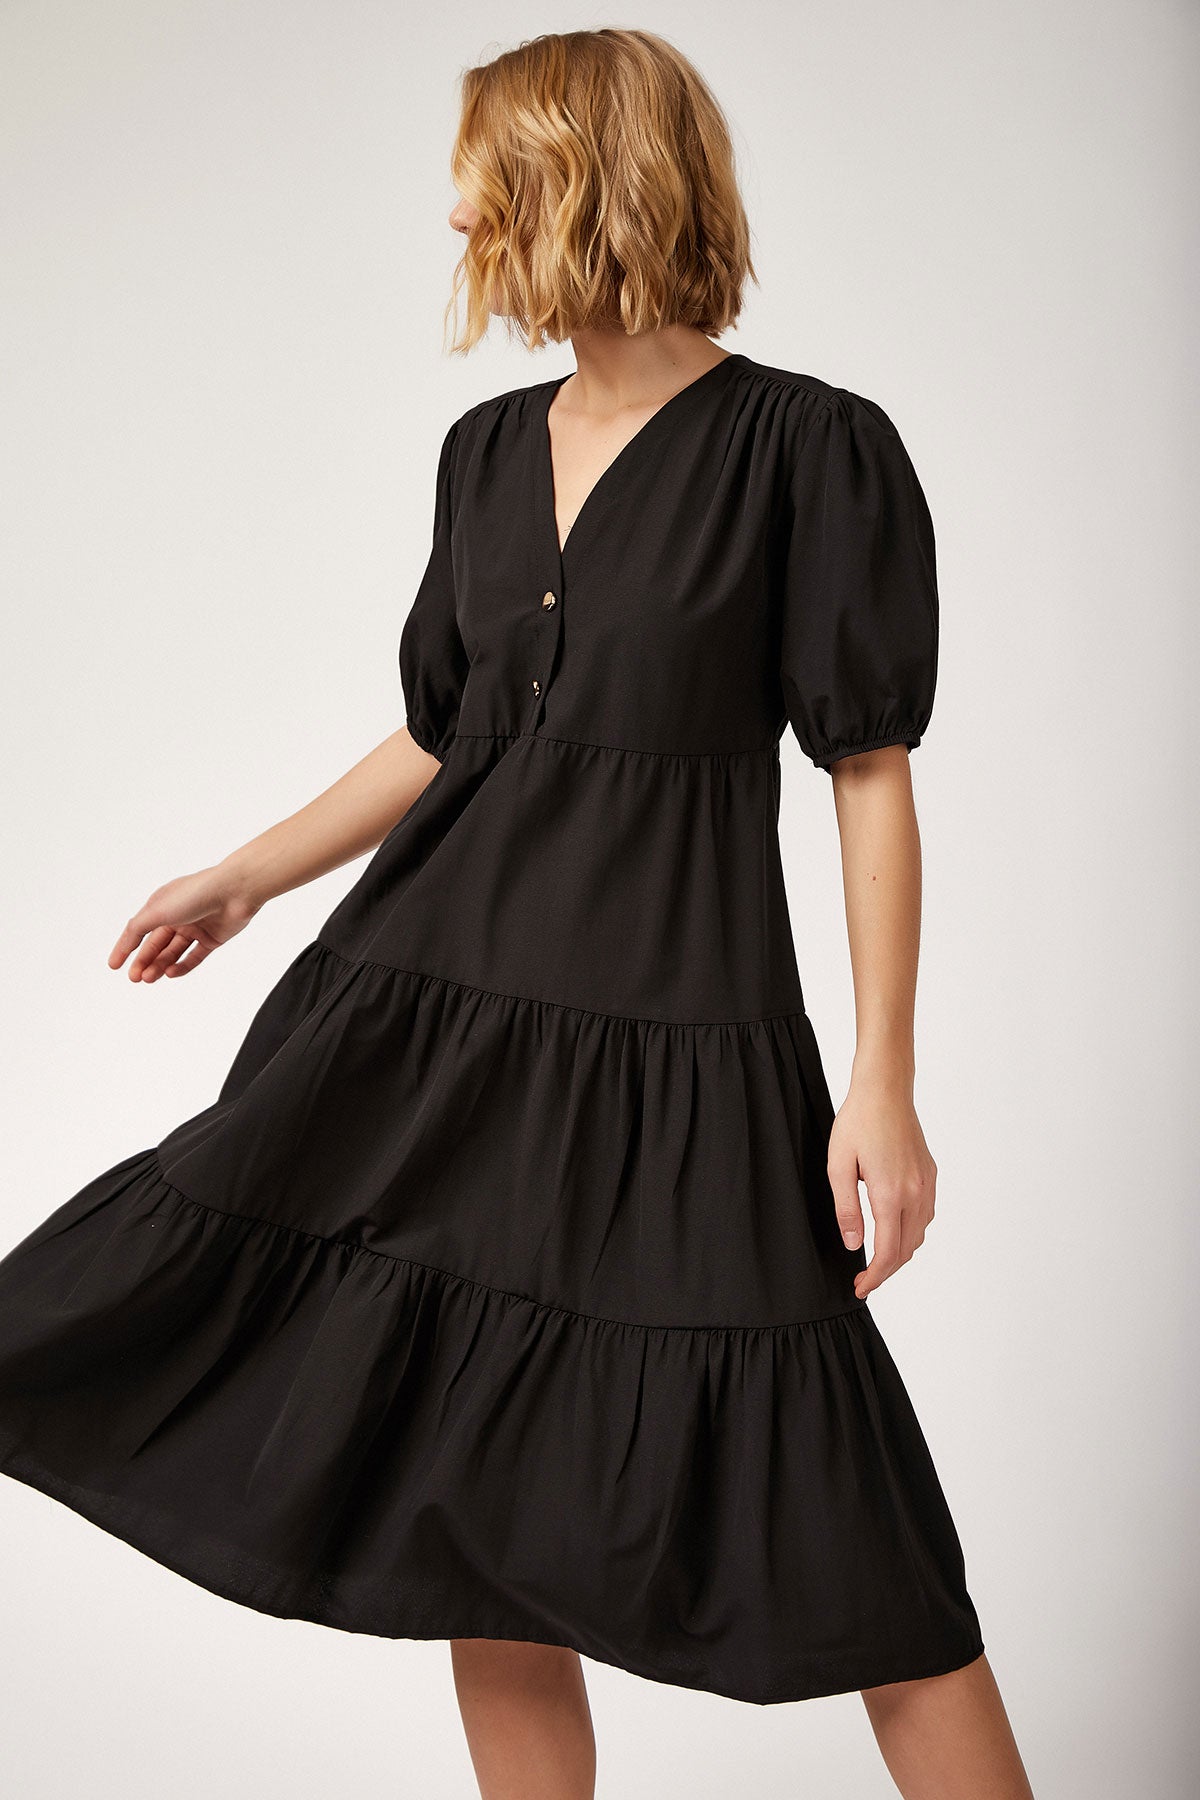 Image of Women's Black Short Dress